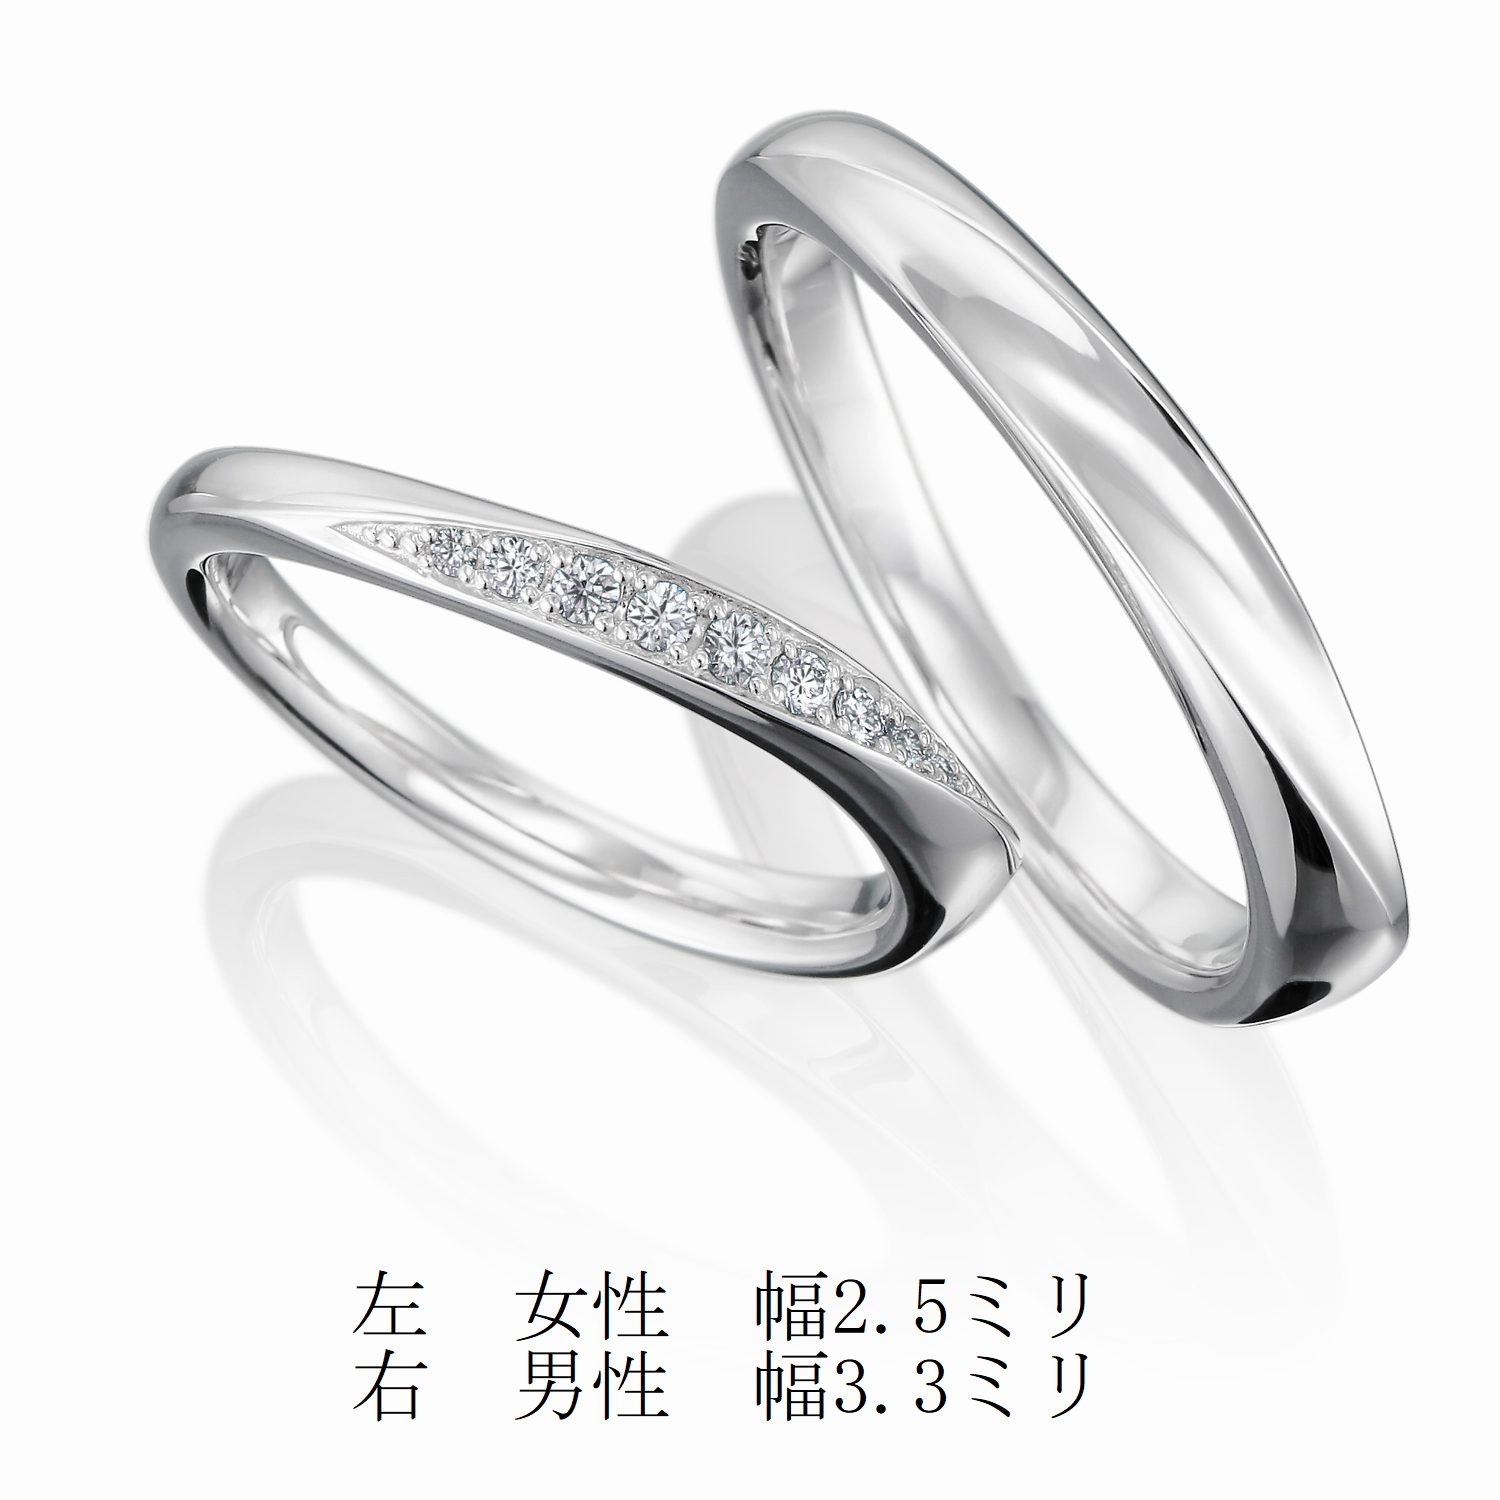 『品質保証』1.0 ctダイヤモンドリングPT 950プラチナ結婚指輪49